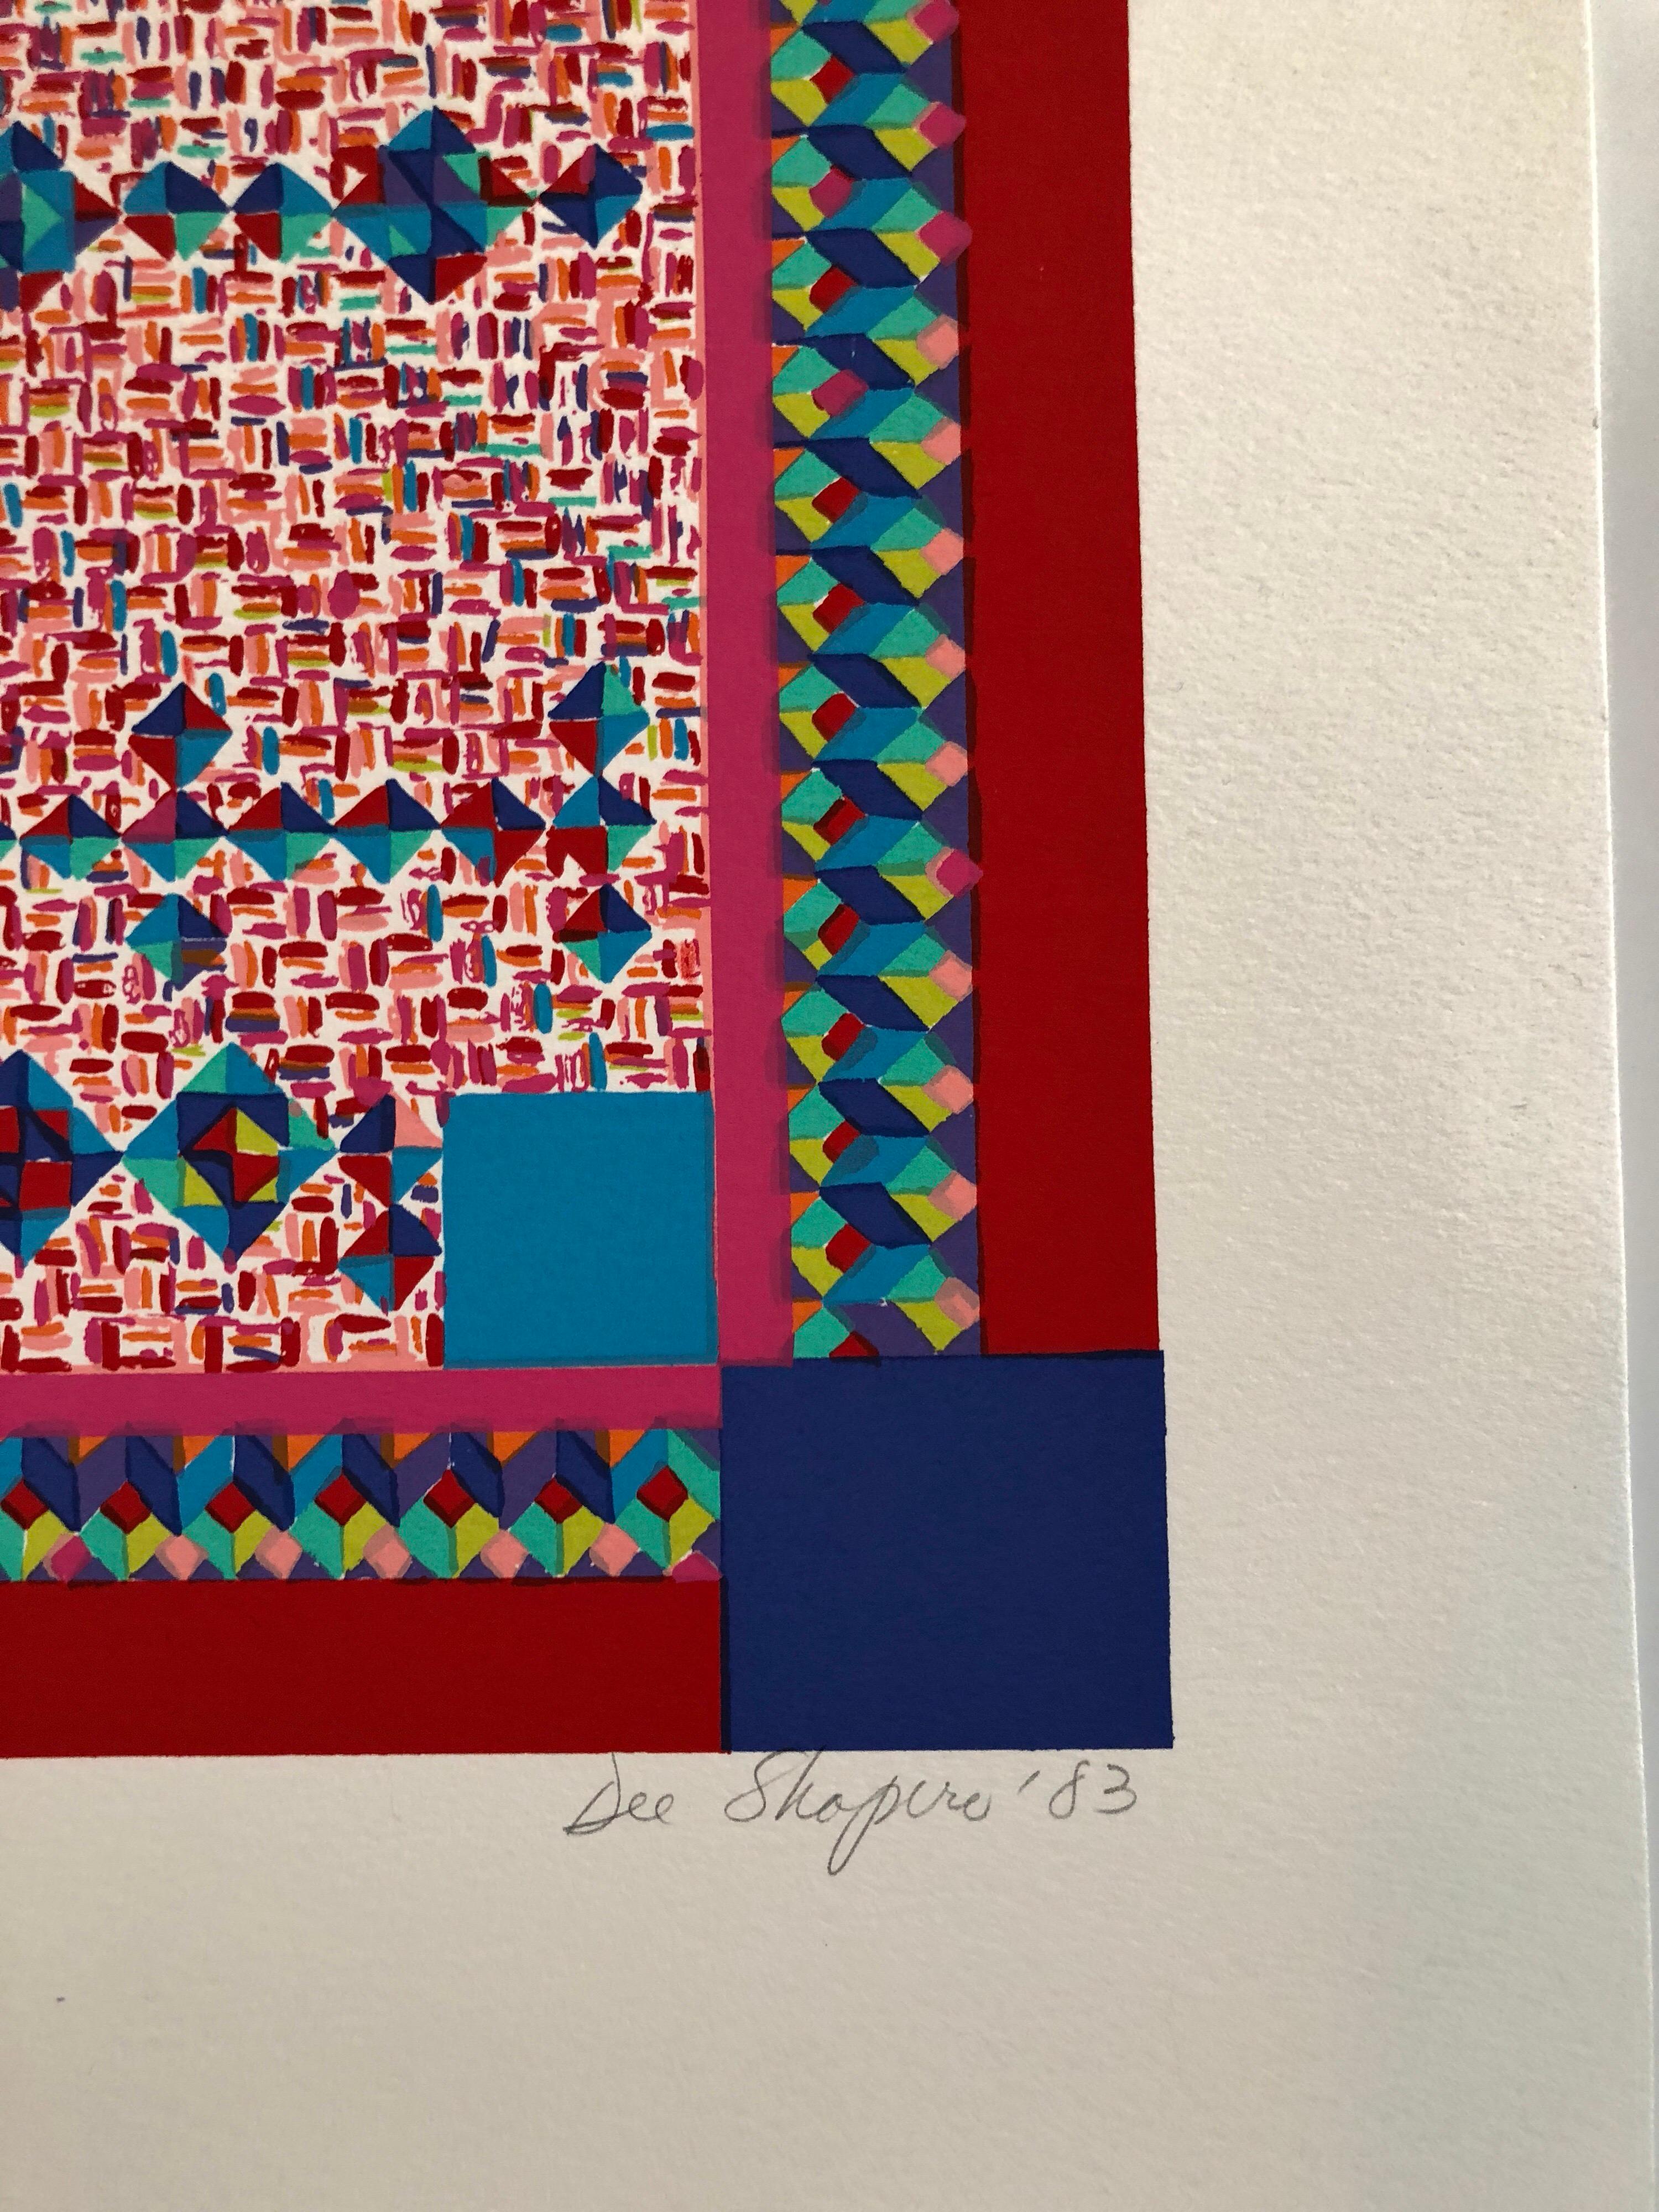 Dee Shapiro est une artiste et écrivaine américaine contemporaine associée au mouvement Pattern and Decoration. J'ai vu qu'il s'agissait du Hejaz.
Dee Shapiro a été inspirée par la vocation d'Artistics dès ses premières années d'éducation. La